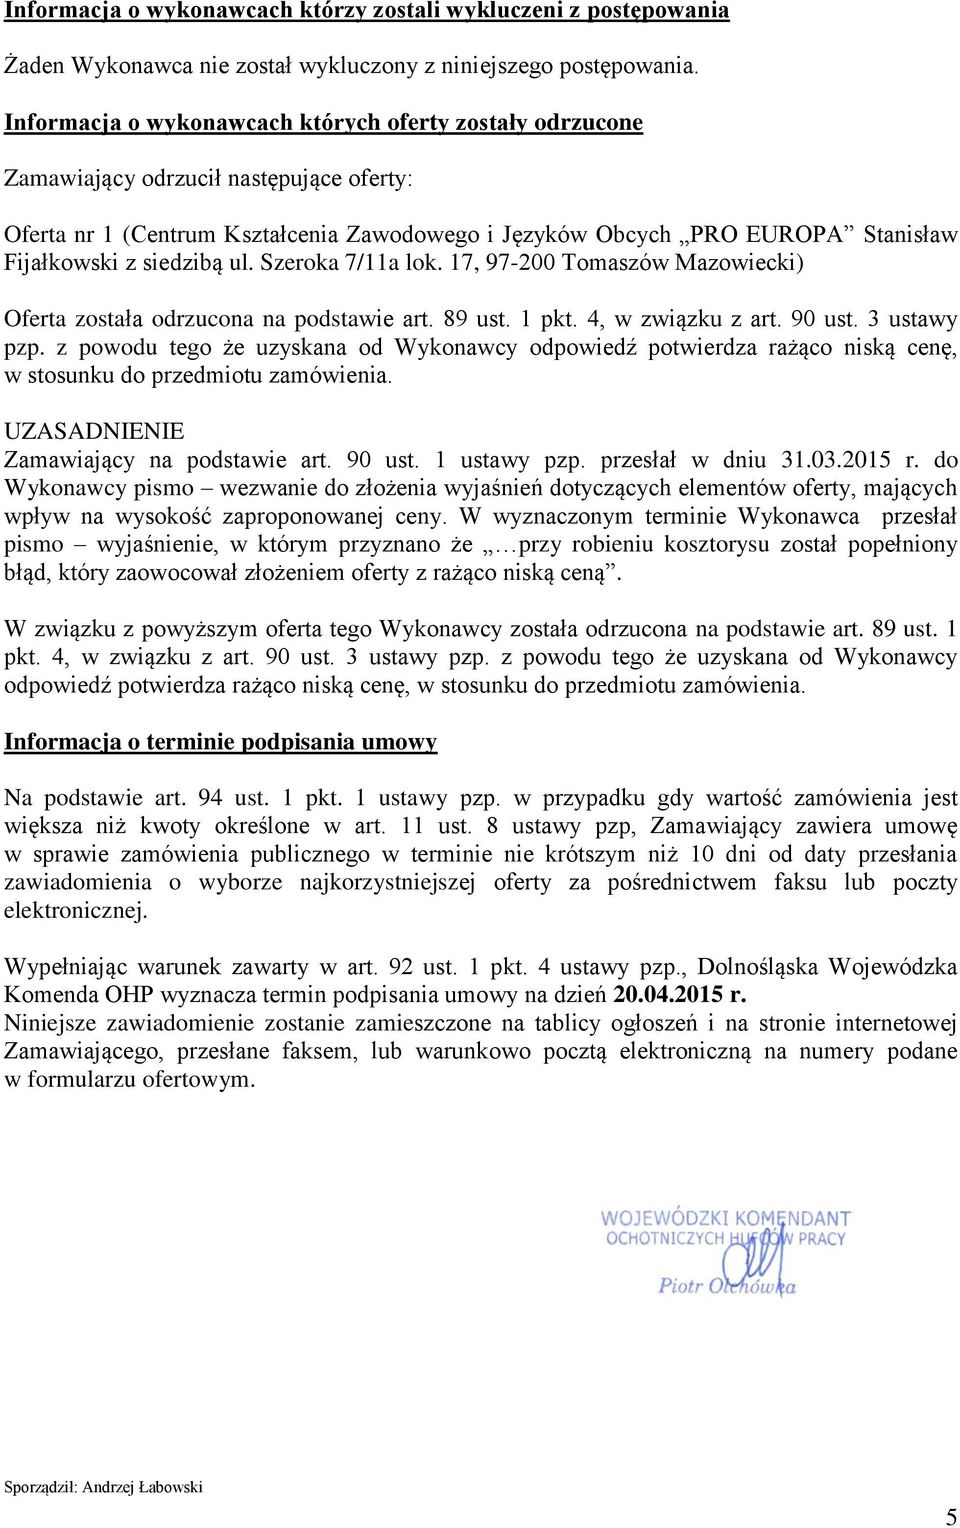 siedzibą ul. Szeroka 7/11a lok. 17, 97-200 Tomaszów Mazowiecki) Oferta została odrzucona na podstawie art. 89 ust. 1 pkt. 4, w związku z art. 90 ust. 3 ustawy pzp.